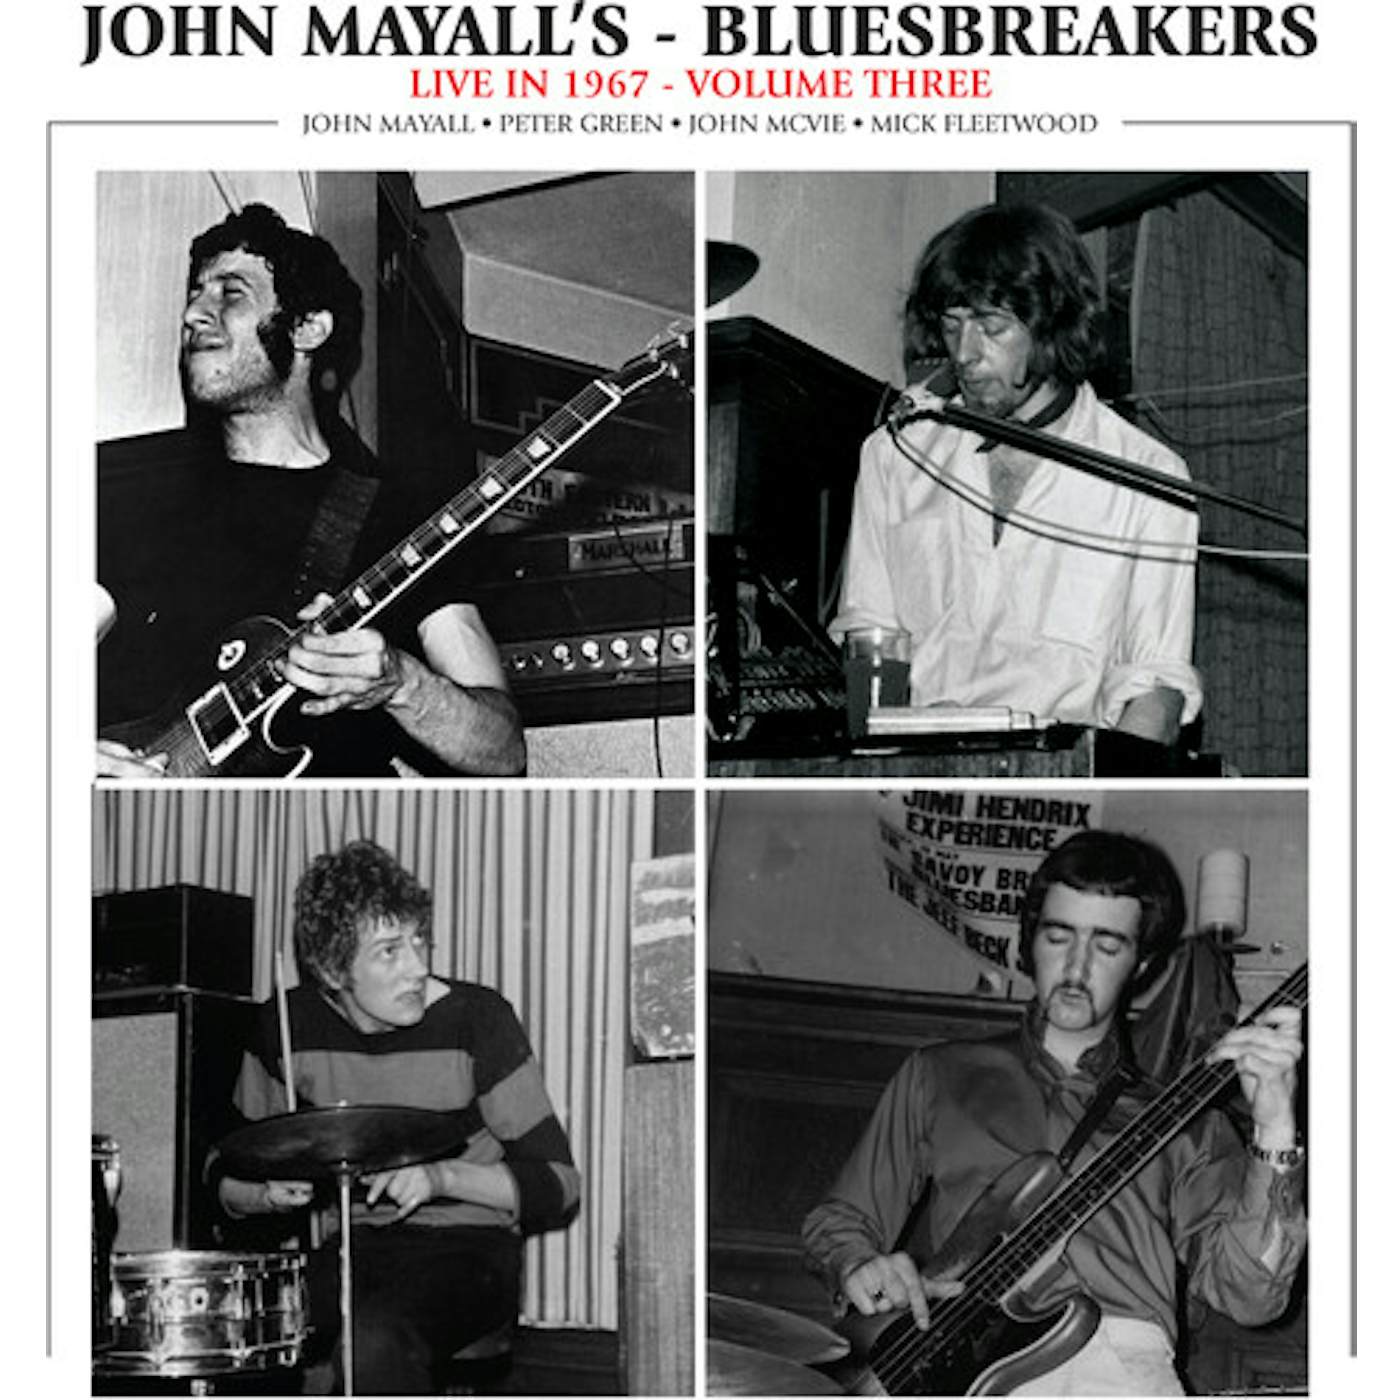 John Mayall & The Bluesbreakers LIVE IN 1967 VOL. 3 CD